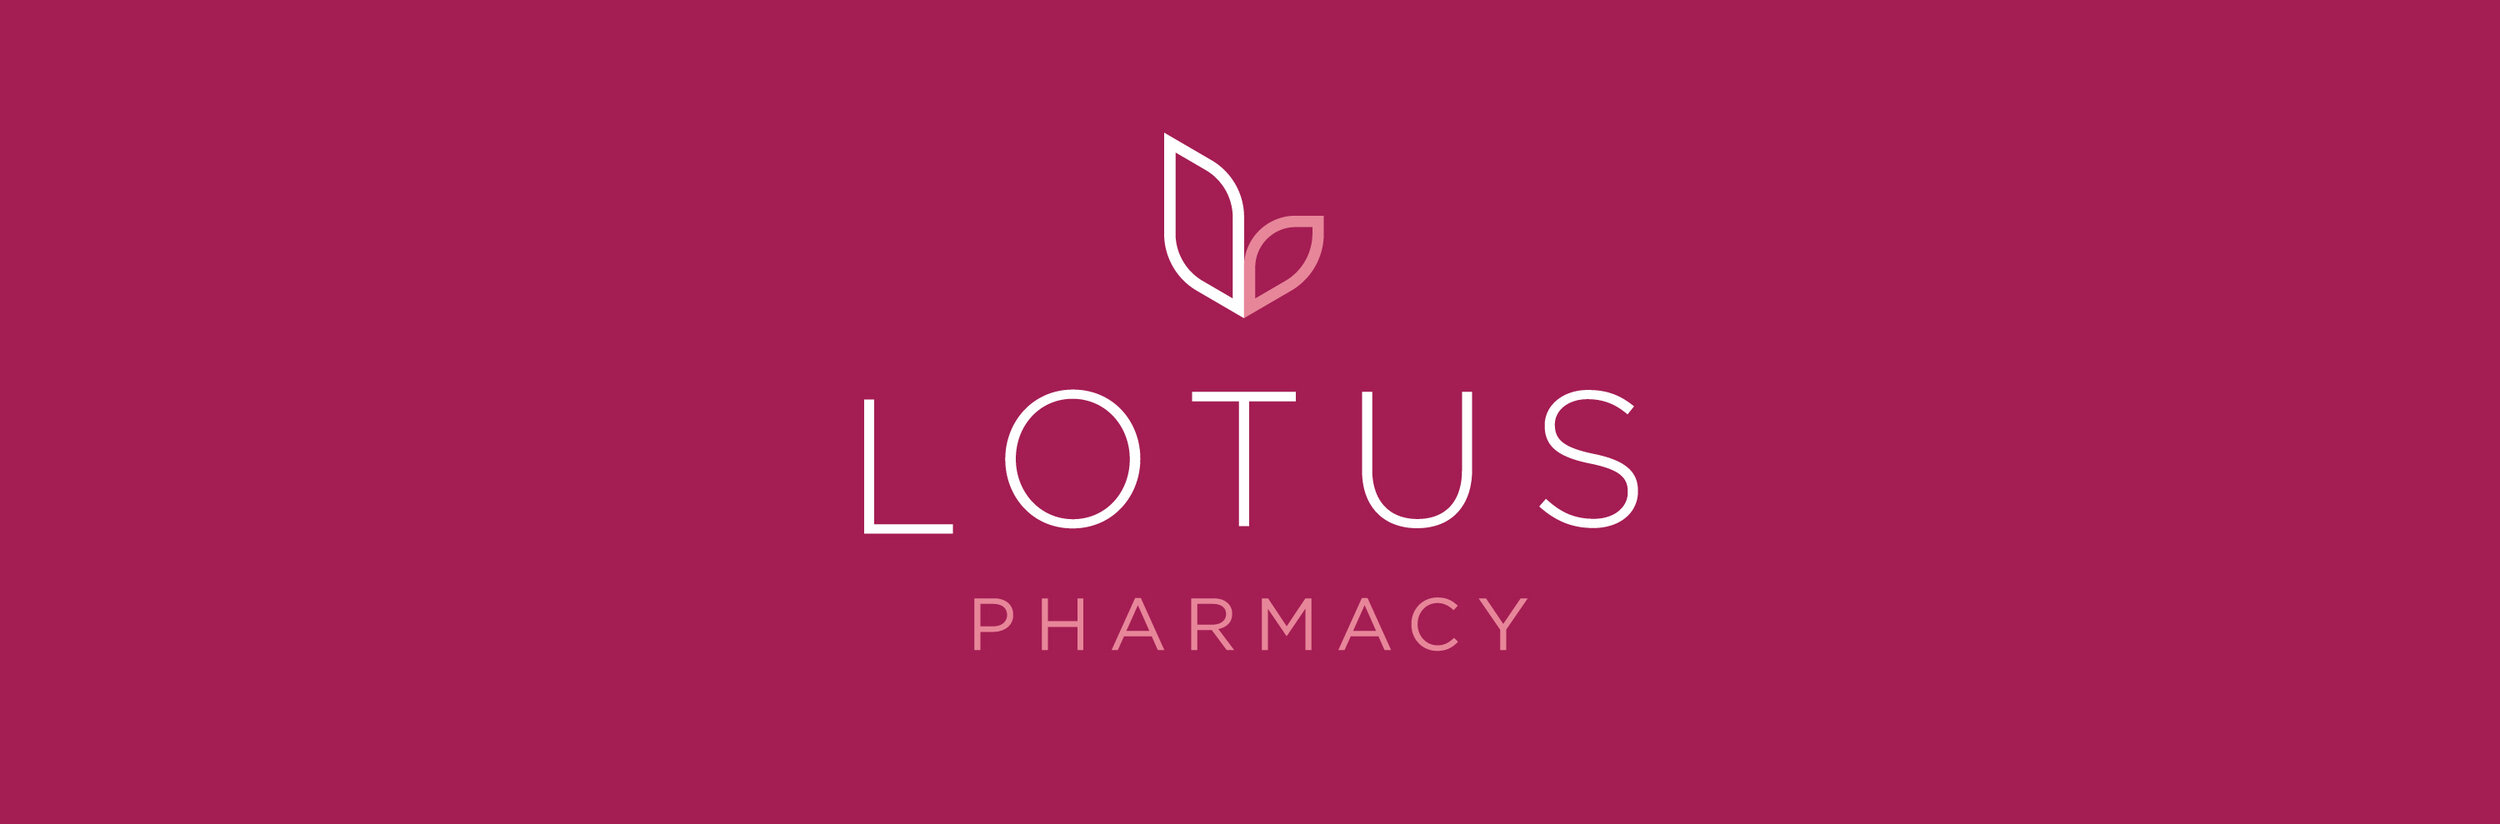 lotus_logo.jpg